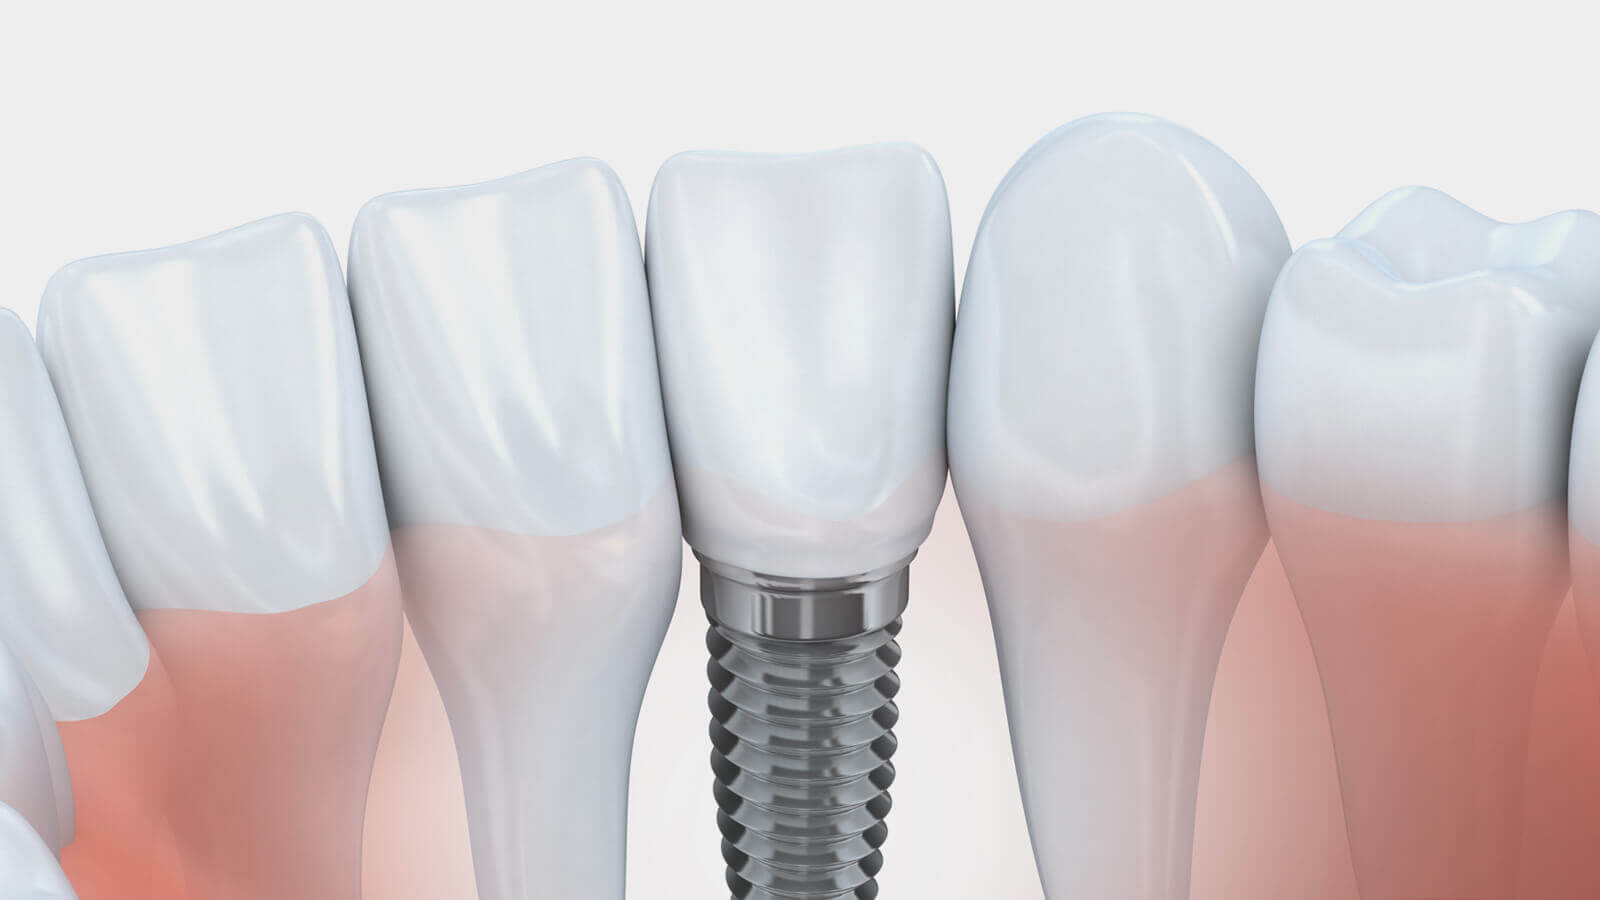 Implantate Köln: Dreidimensionale Planung der optimalen Position für das Zahnimplantat